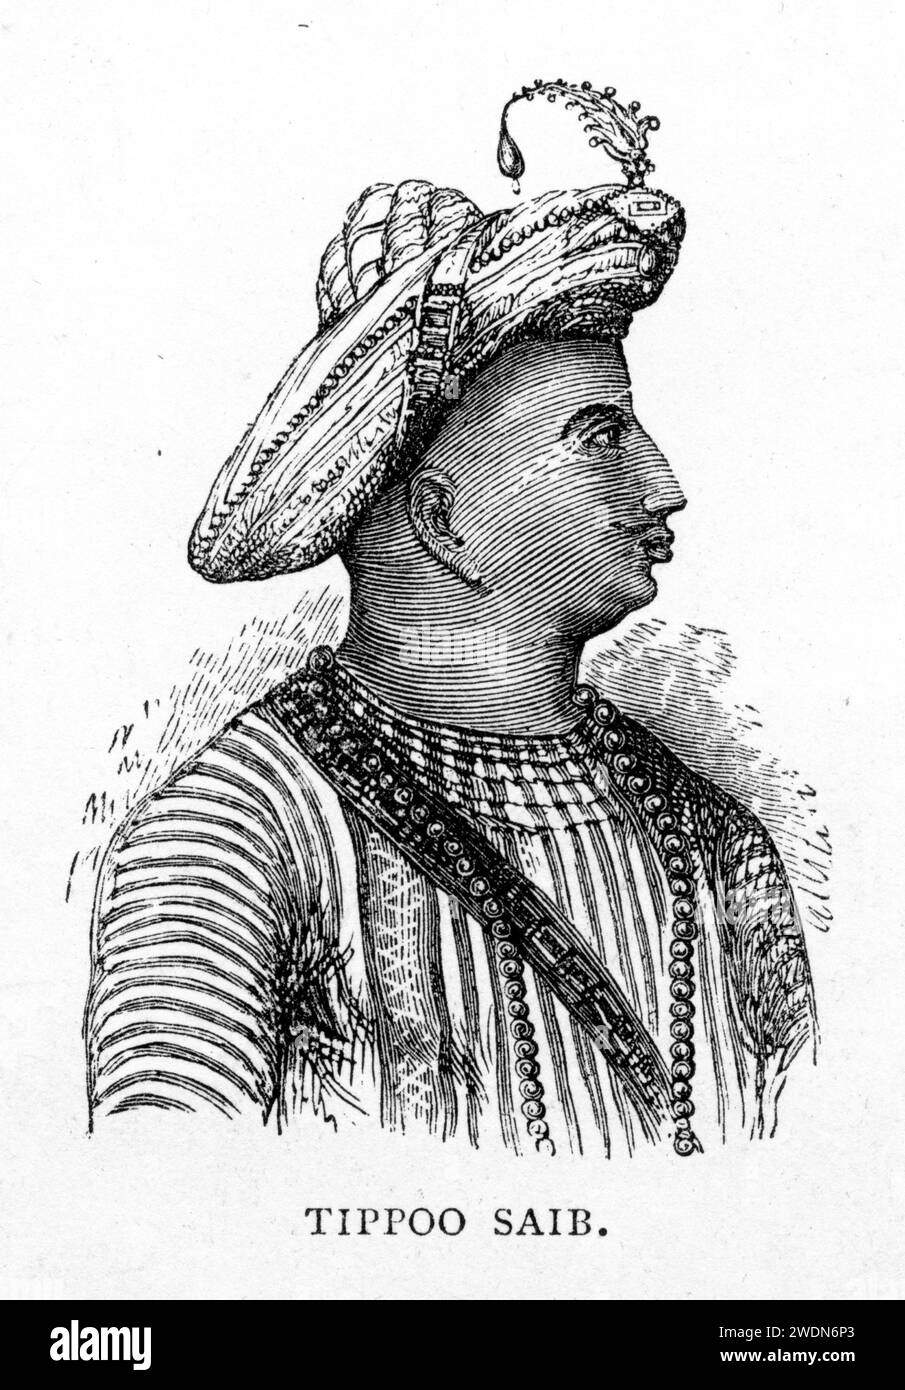 Porträt von Tipu Sultan (Sultan Fateh Ali Sahab Tipu; 1751–1799), gemeinhin als Sher-e-Mysore oder „Tiger of Mysore“ bezeichnet, der indische muslimische Herrscher des Königreichs Mysore mit Sitz in Südindien. Er war ein Pionier der Raketenartillerie. Veröffentlicht um 1880 Stockfoto